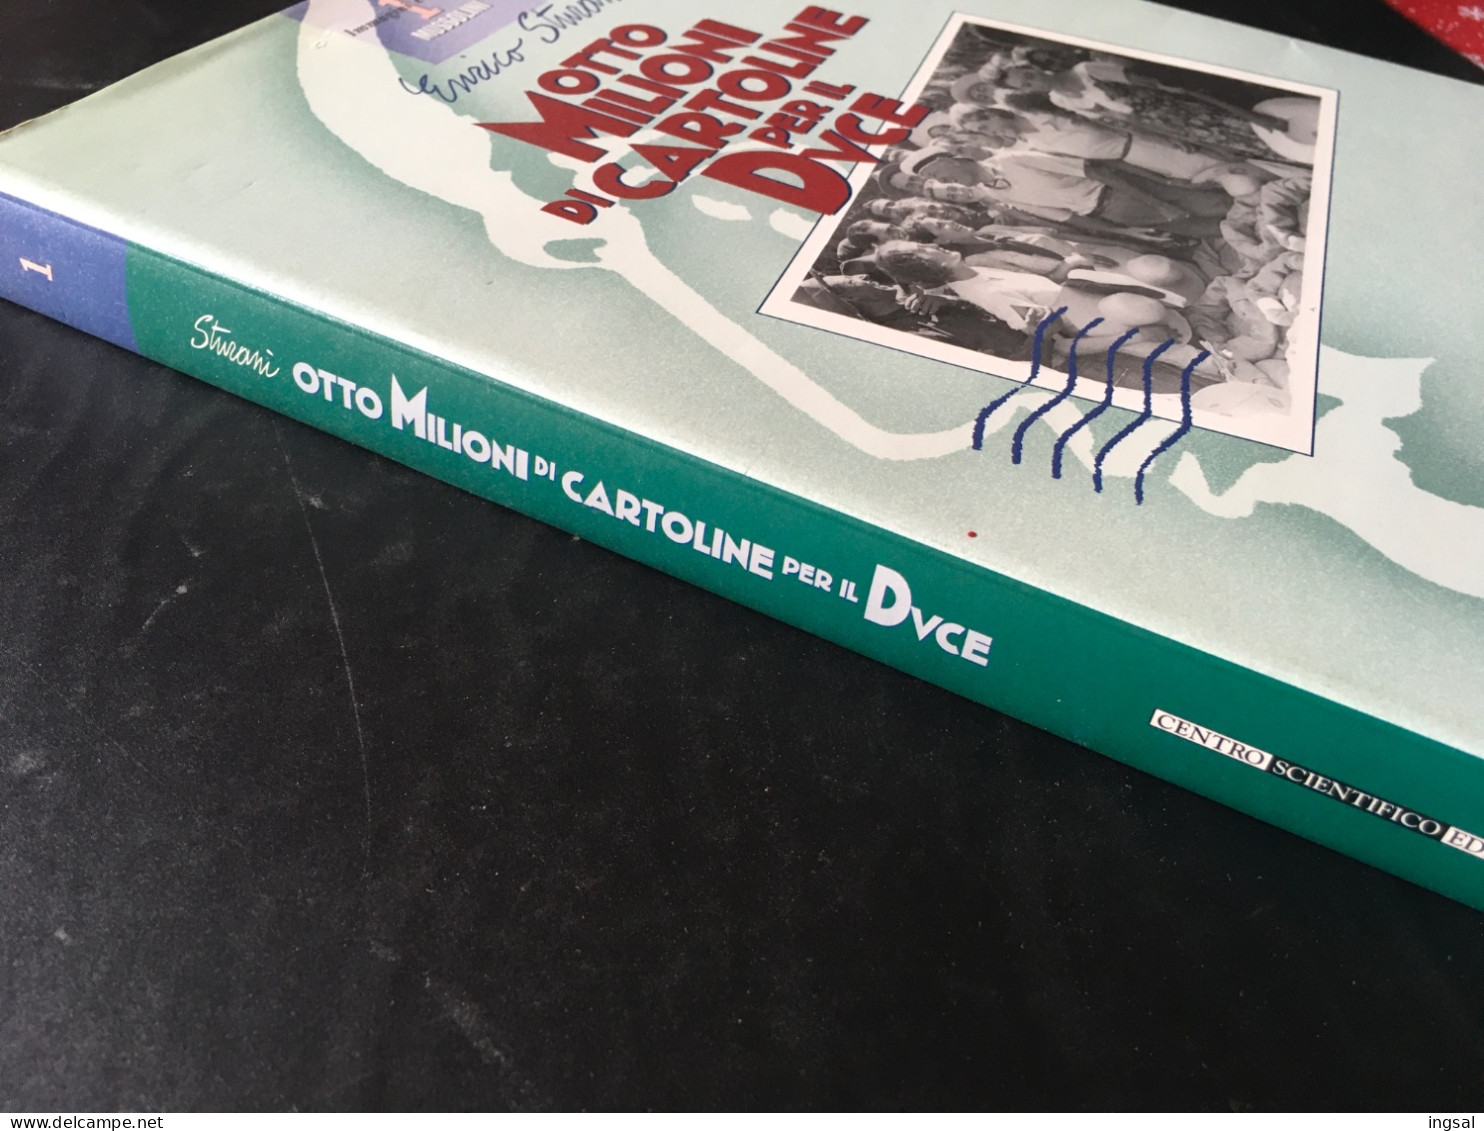 Immagini E Storia Di Mussolini…..Otto Milioni Di Cartoline Per Il Duce ……” Editore…Centro Scientifico......Edizione 1995 - Bibliografía